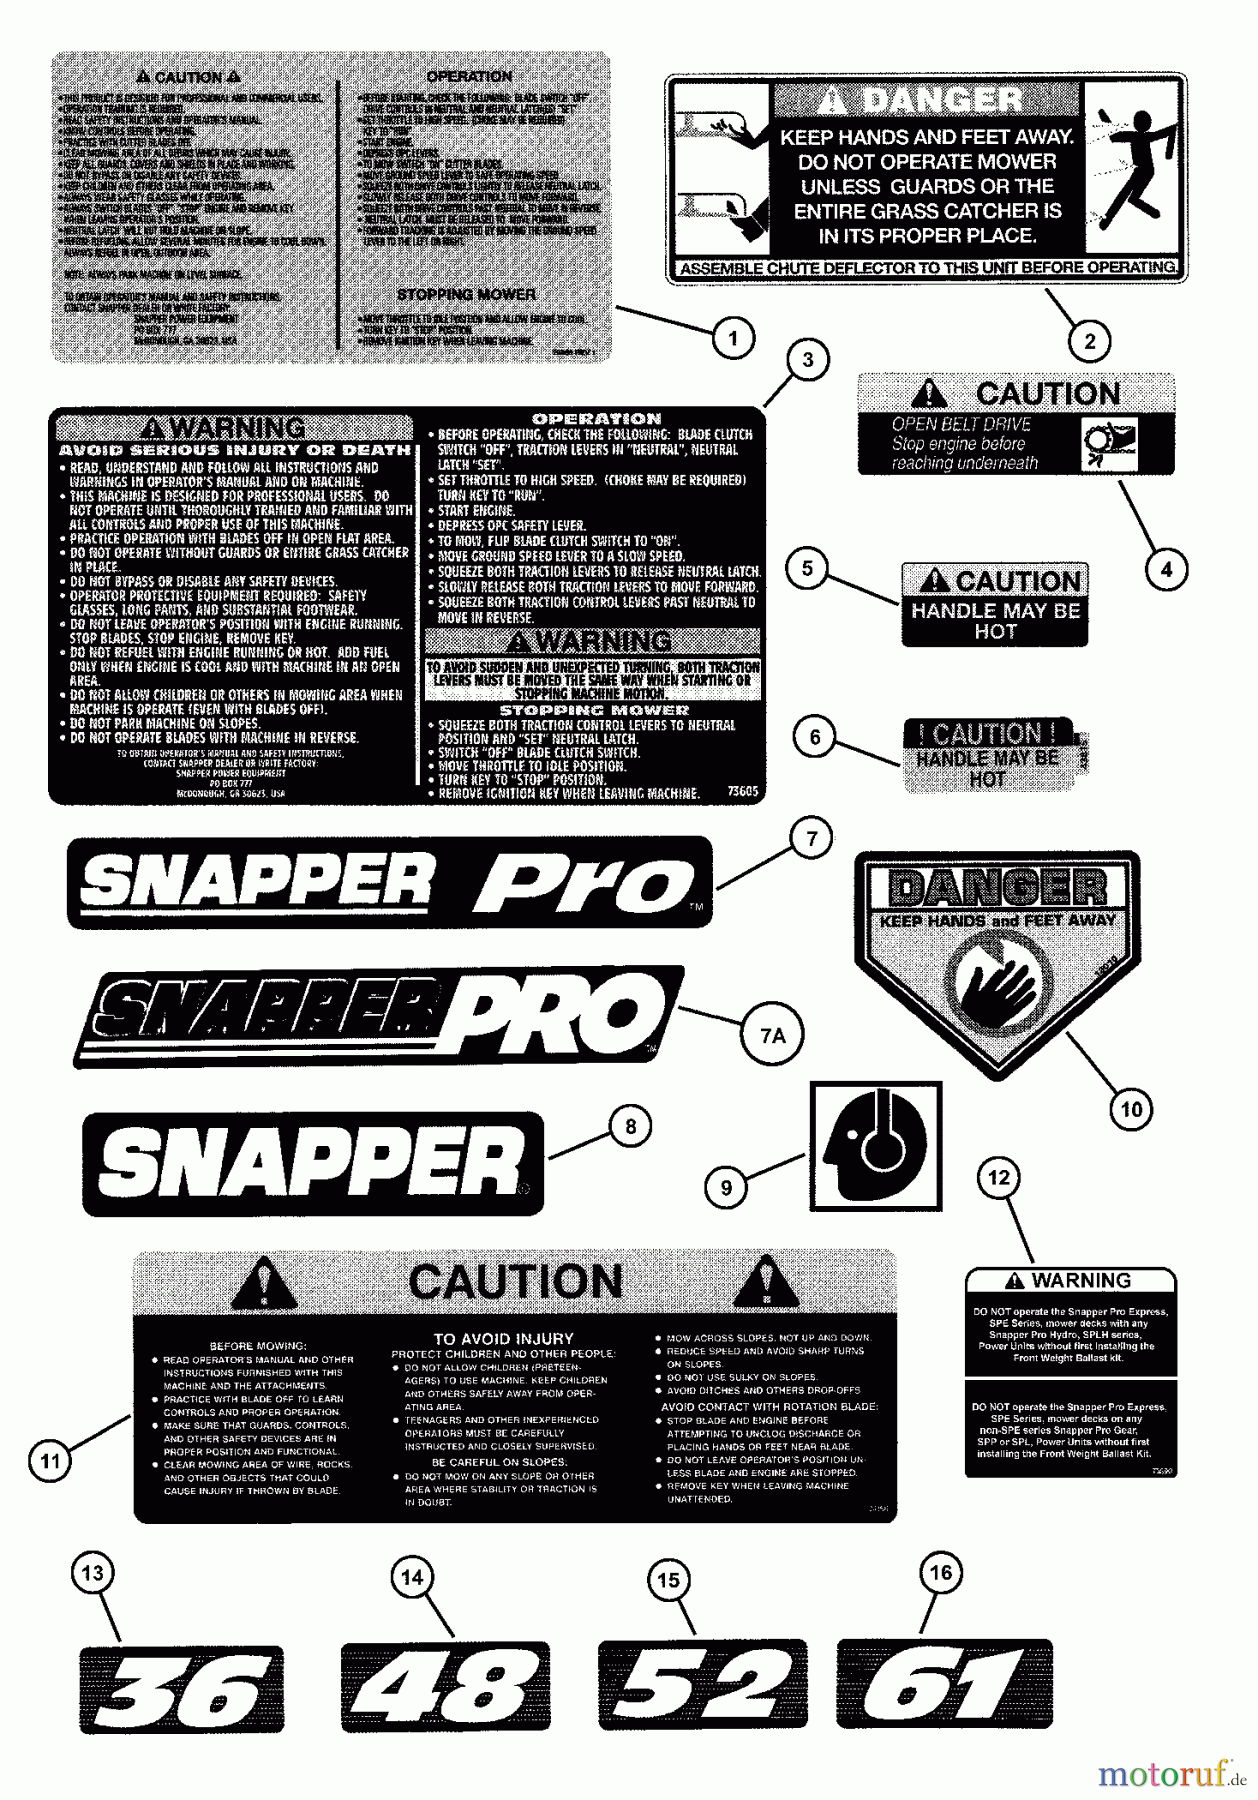  Snapper Mähdecks SPA520 - Snapper 52